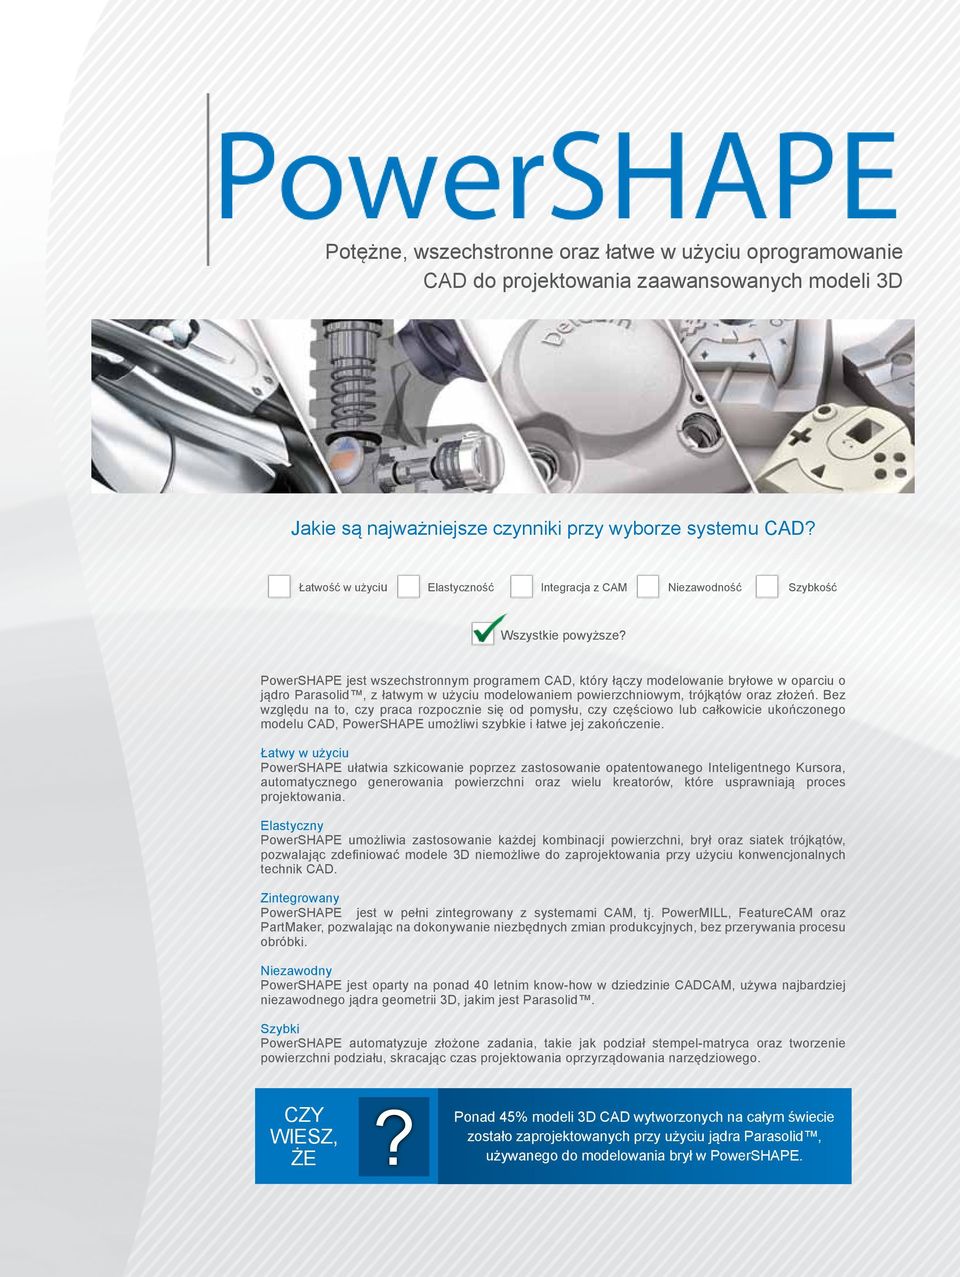 PowerSHAPE jest wszechstronnym programem CAD, który łączy modelowanie bryłowe w oparciu o jądro Parasolid, z łatwym w użyciu modelowaniem powierzchniowym, trójkątów oraz złożeń.